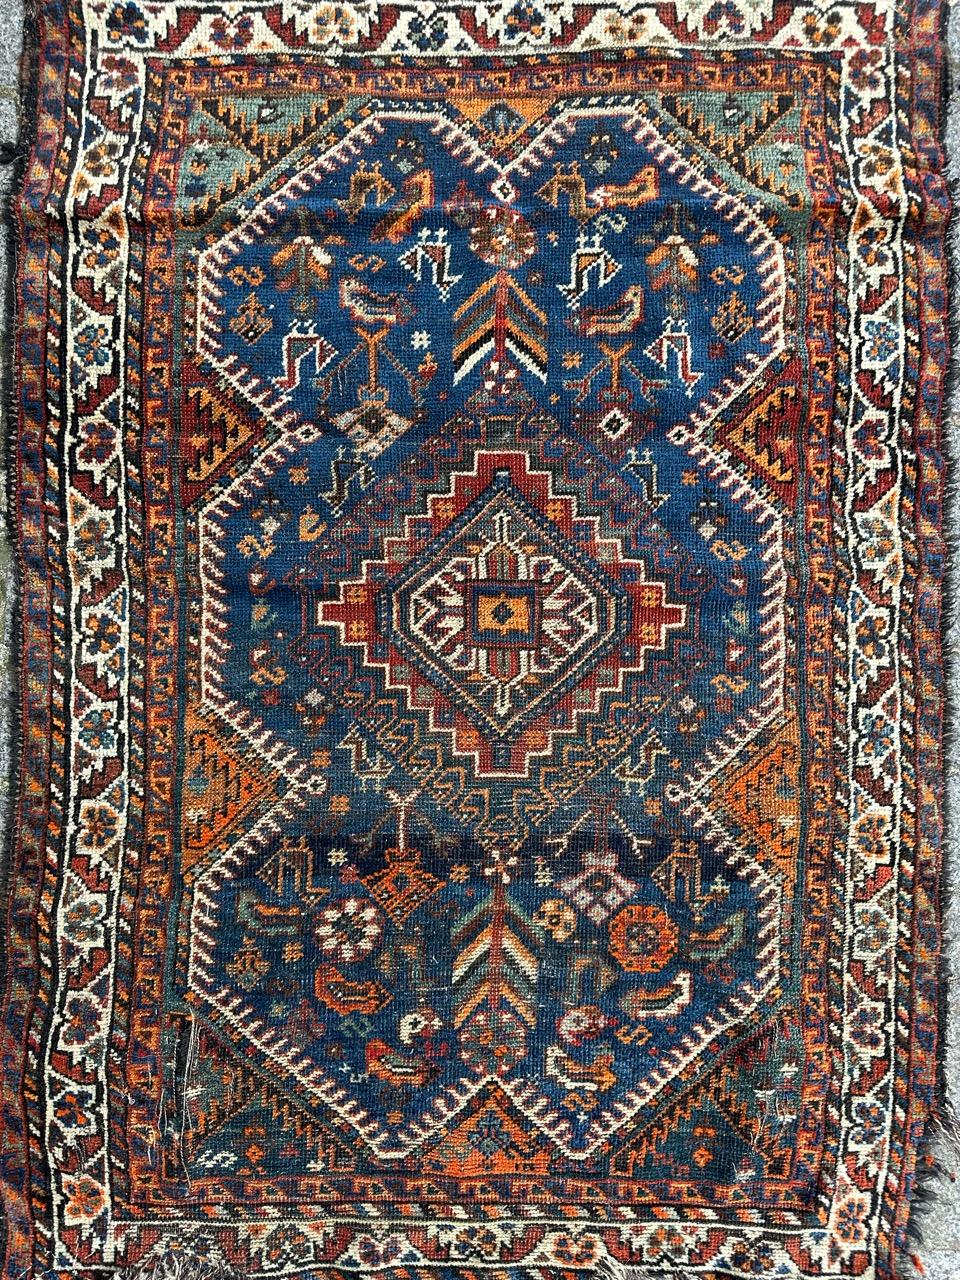 Très beau tapis Shiraz du début du 20ème siècle, avec de jolis motifs géométriques et tribaux et de belles couleurs naturelles avec du bleu, du vert, de l'orange, du violet et du marron, entièrement noué à la main avec de la laine sur une base de